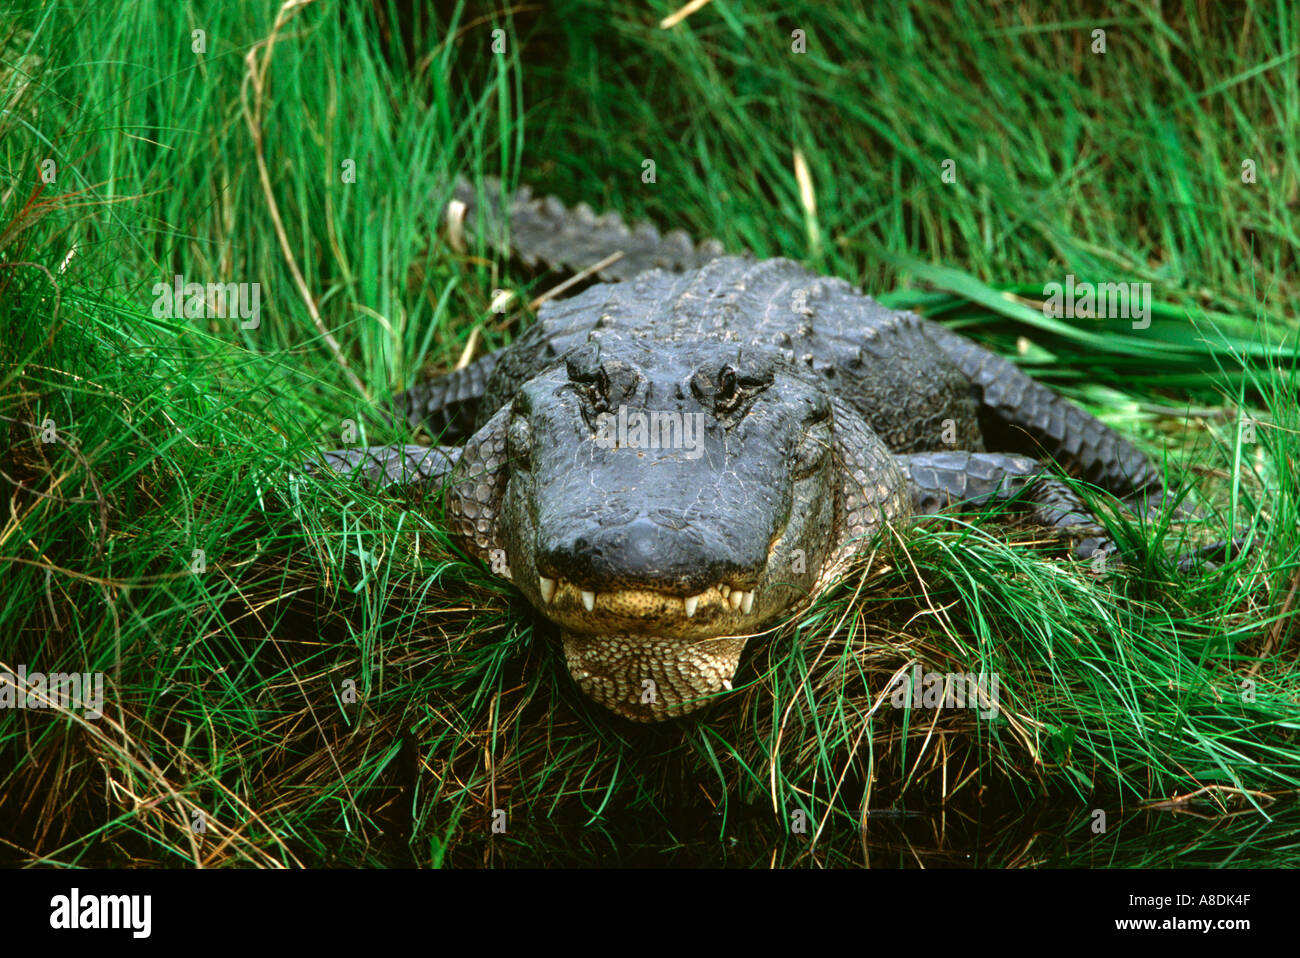 American Alligator Alligator mississippiensis, Erwachsene in Gräsern, Texas, USA Stockfoto